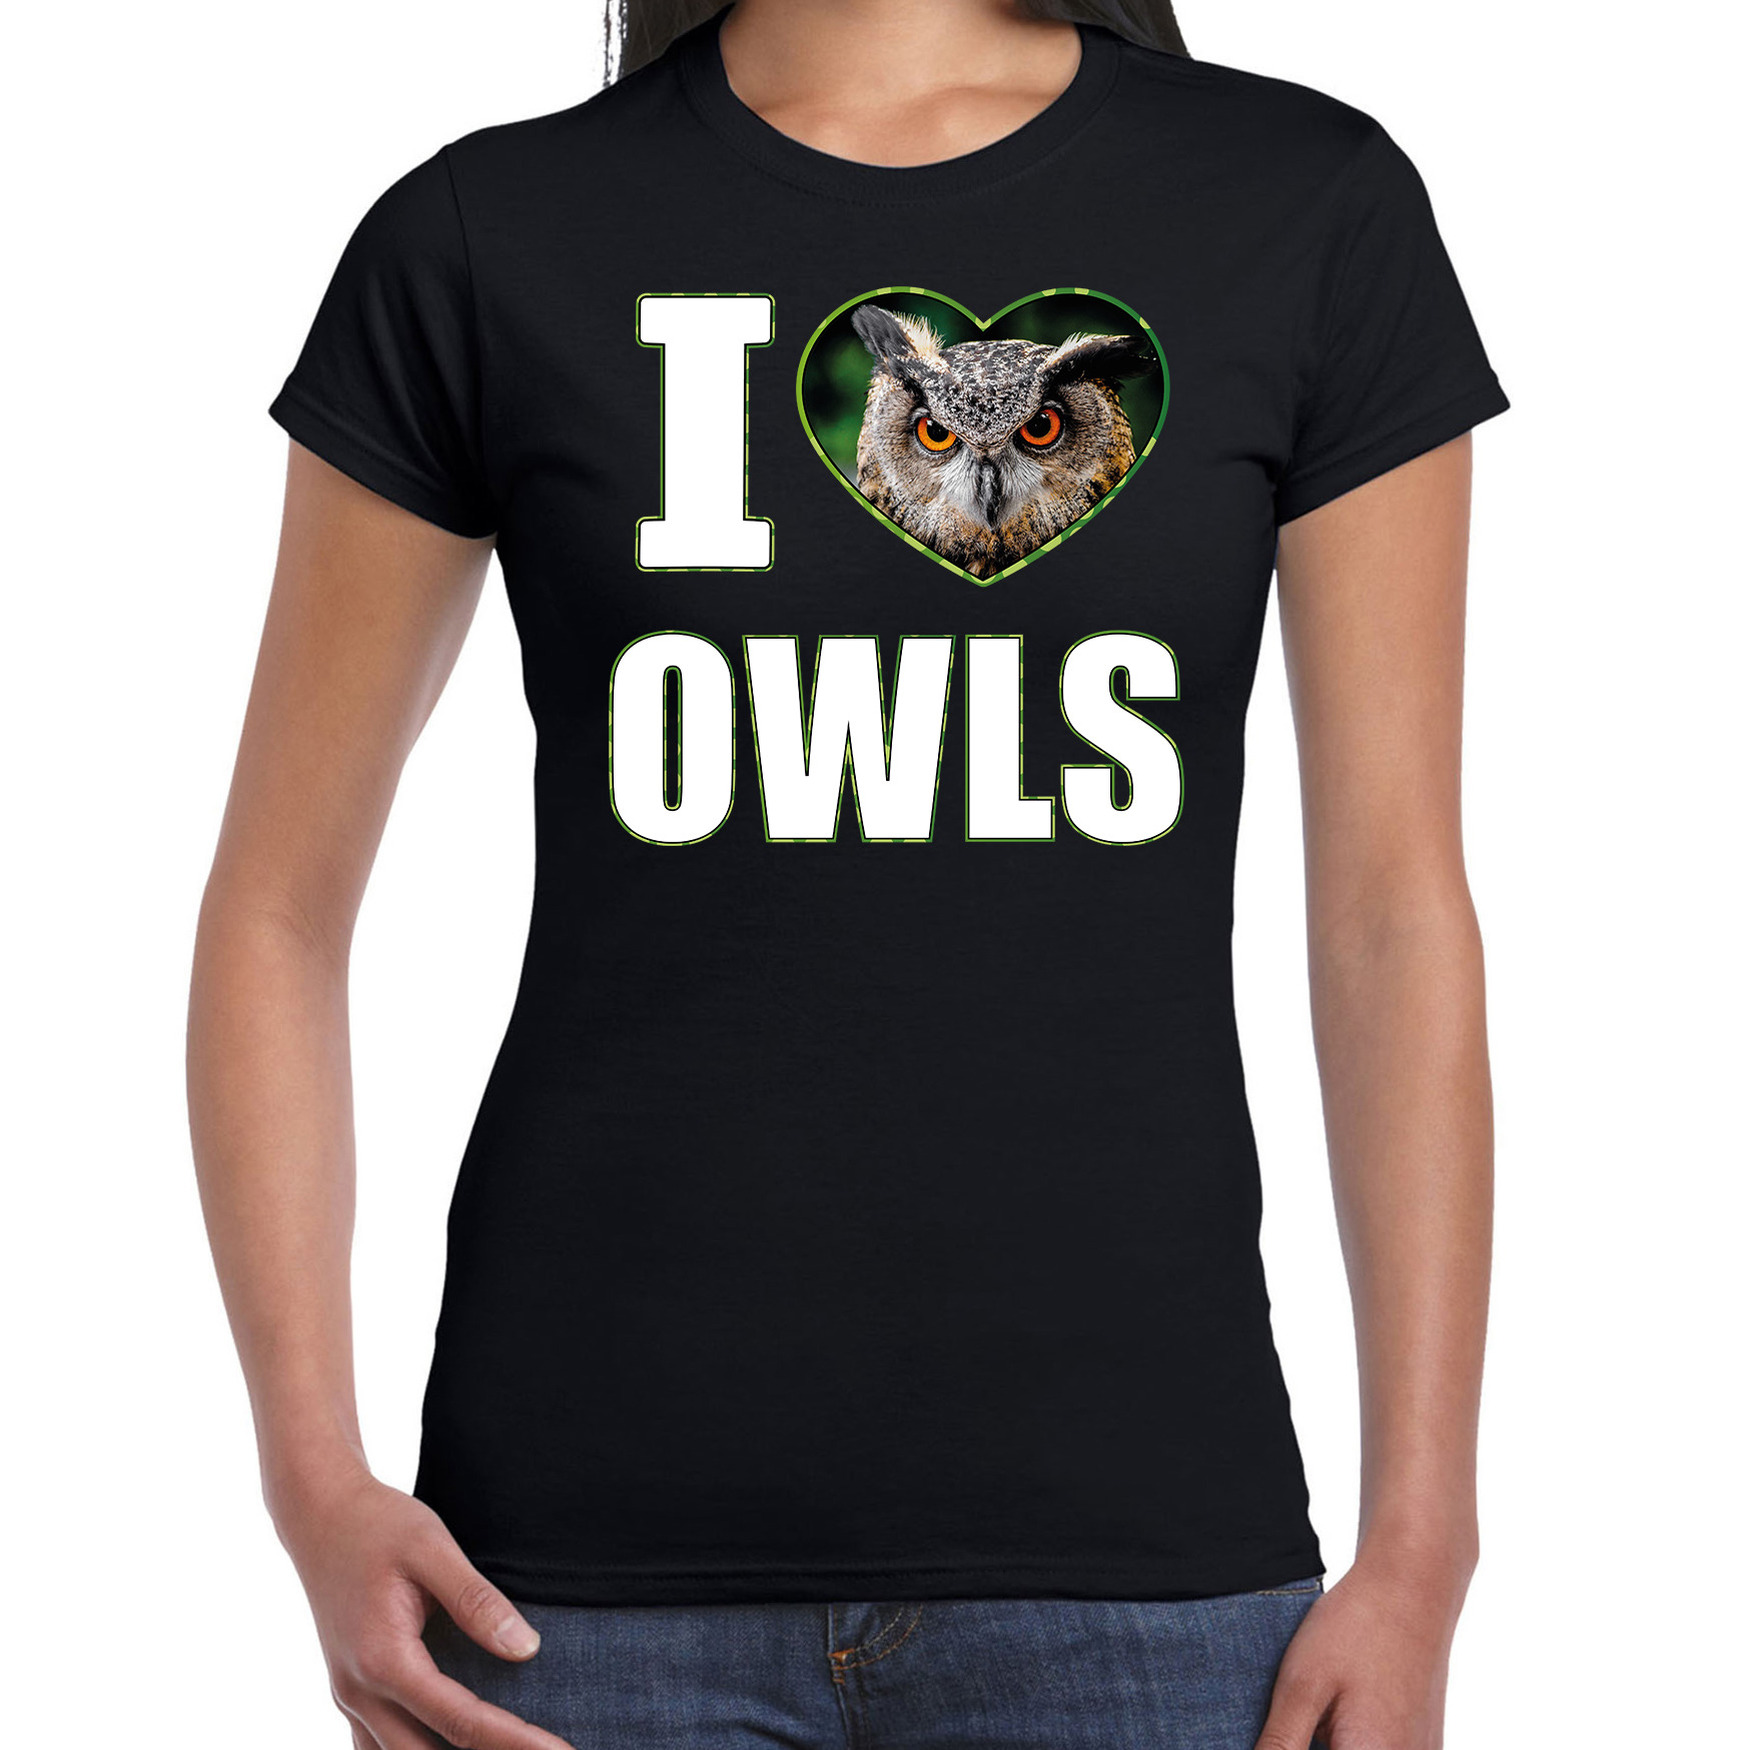 I love owls t-shirt met dieren foto van een uil zwart voor dames